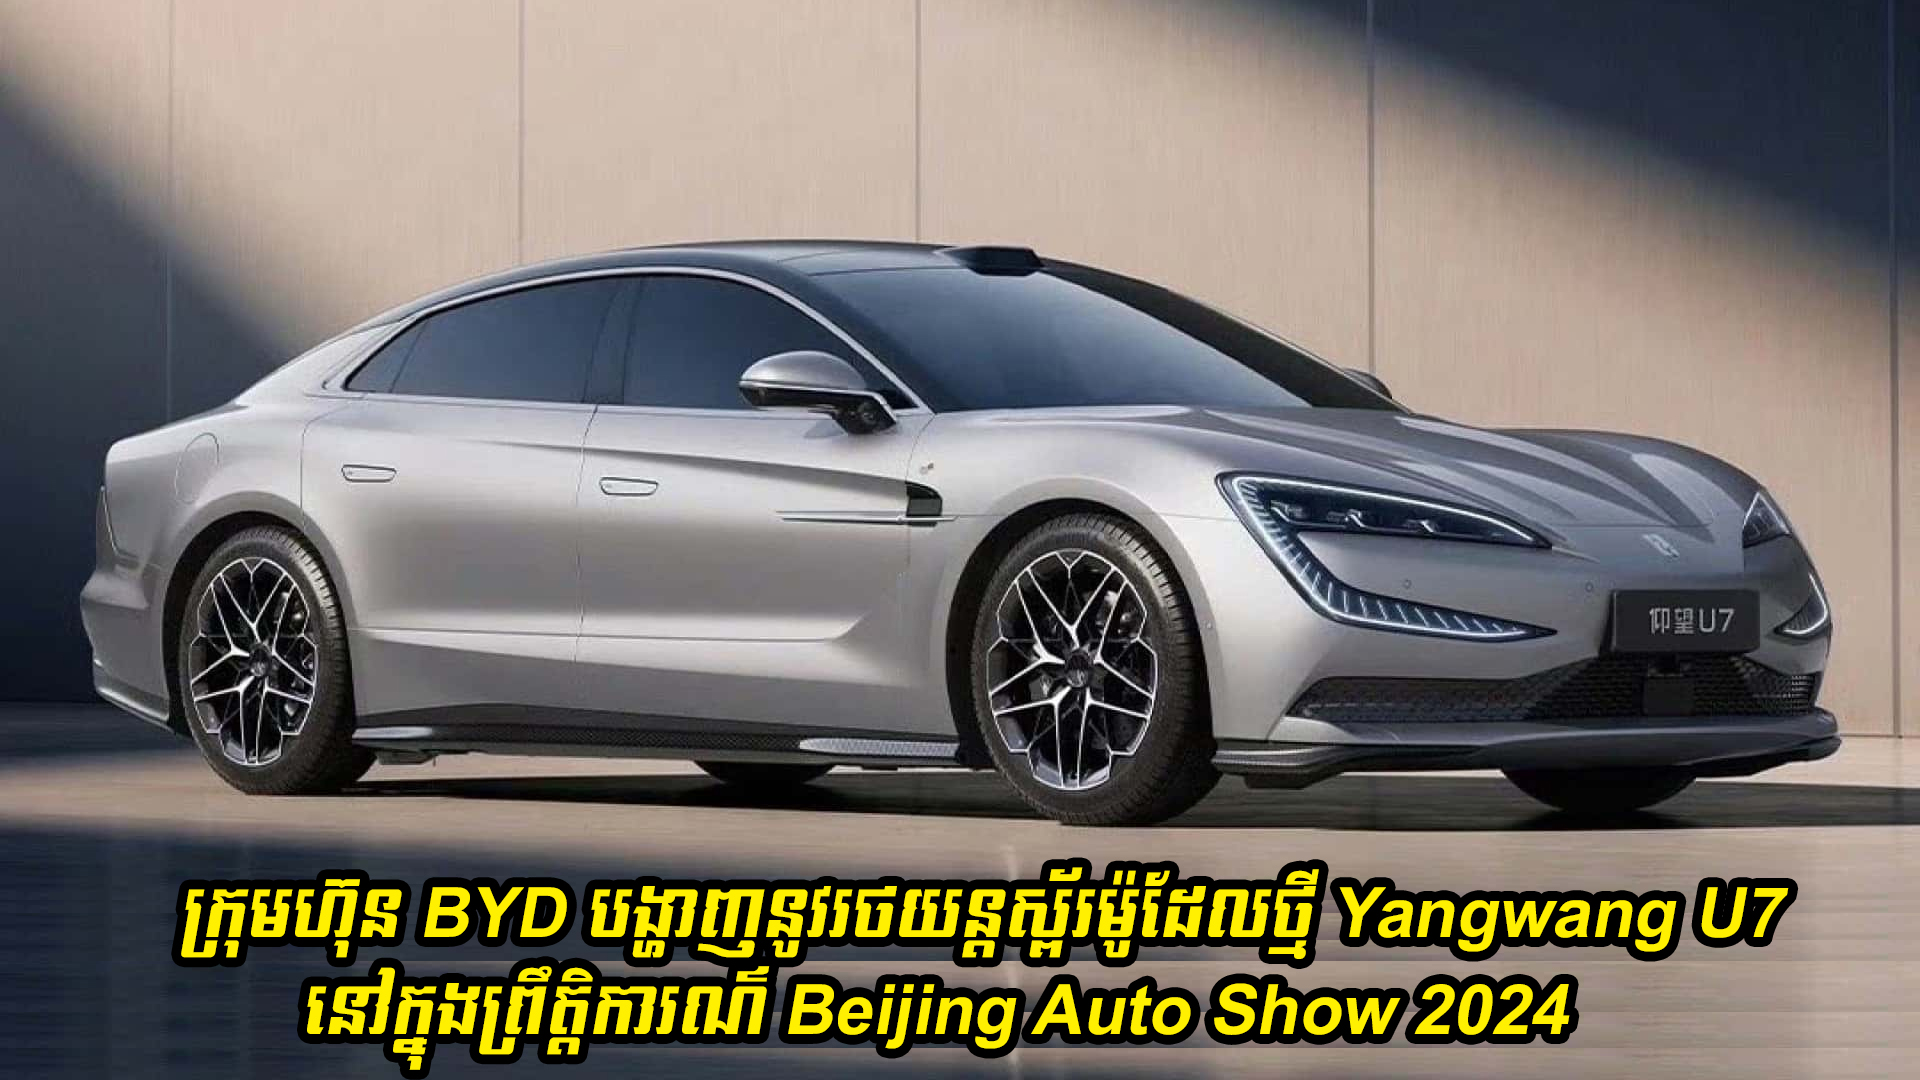 ក្រុមហ៊ុន BYD បង្ហាញនូវរថយន្តស្ព័រម៉ូដែលថ្មី Yangwang U7 នៅក្នុងព្រឹត្តិការណ៌ Beijing Auto Show 2024